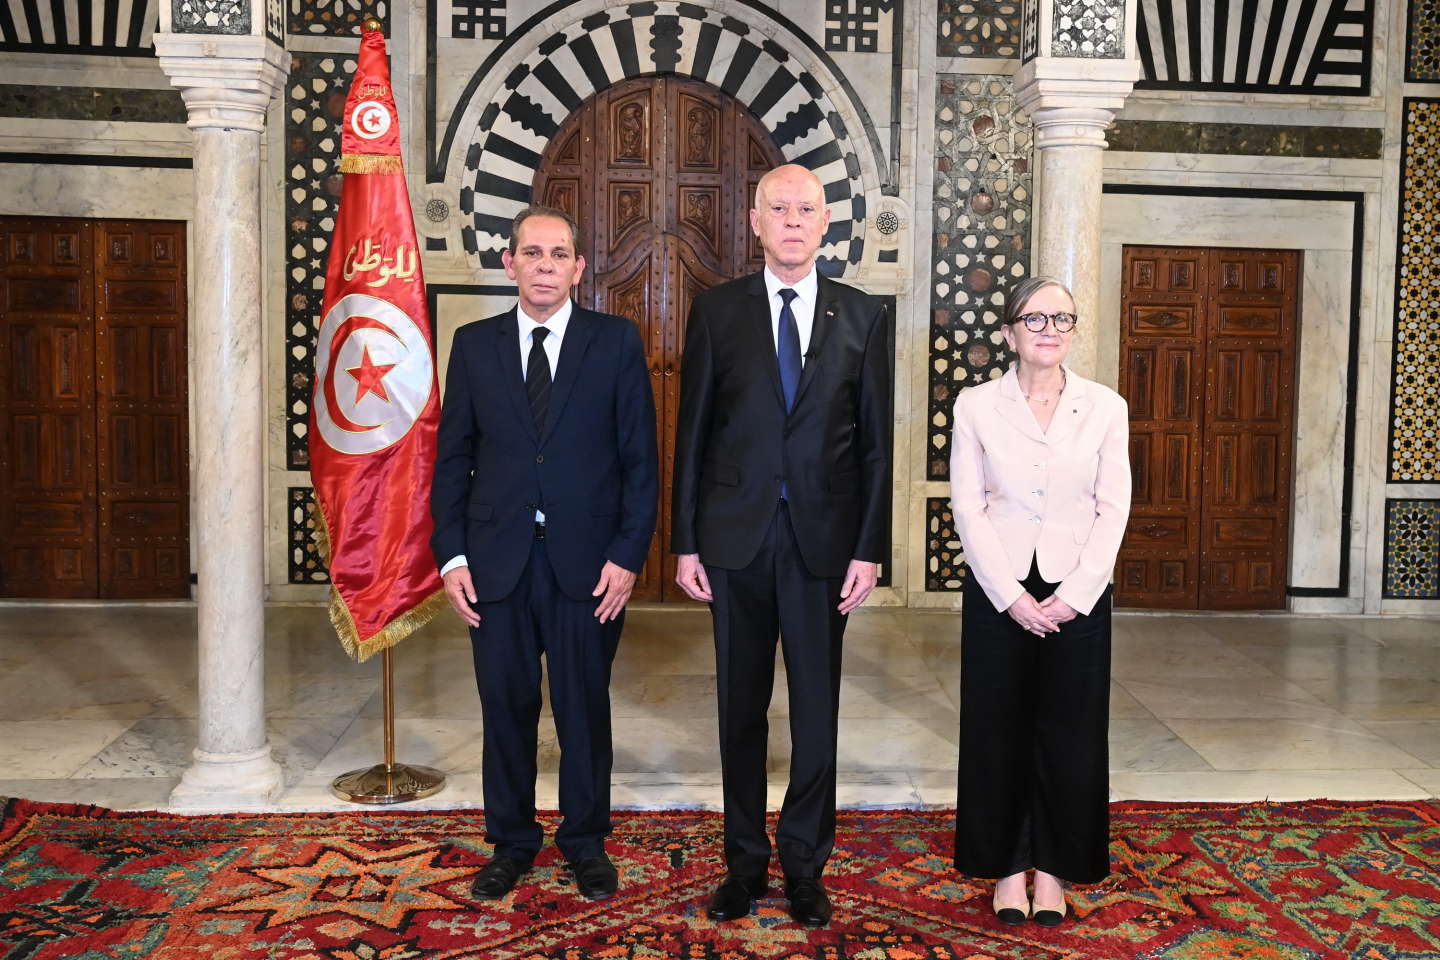 A Tunis, un nouveau premier ministre hostile à l’héritage de Bourguiba